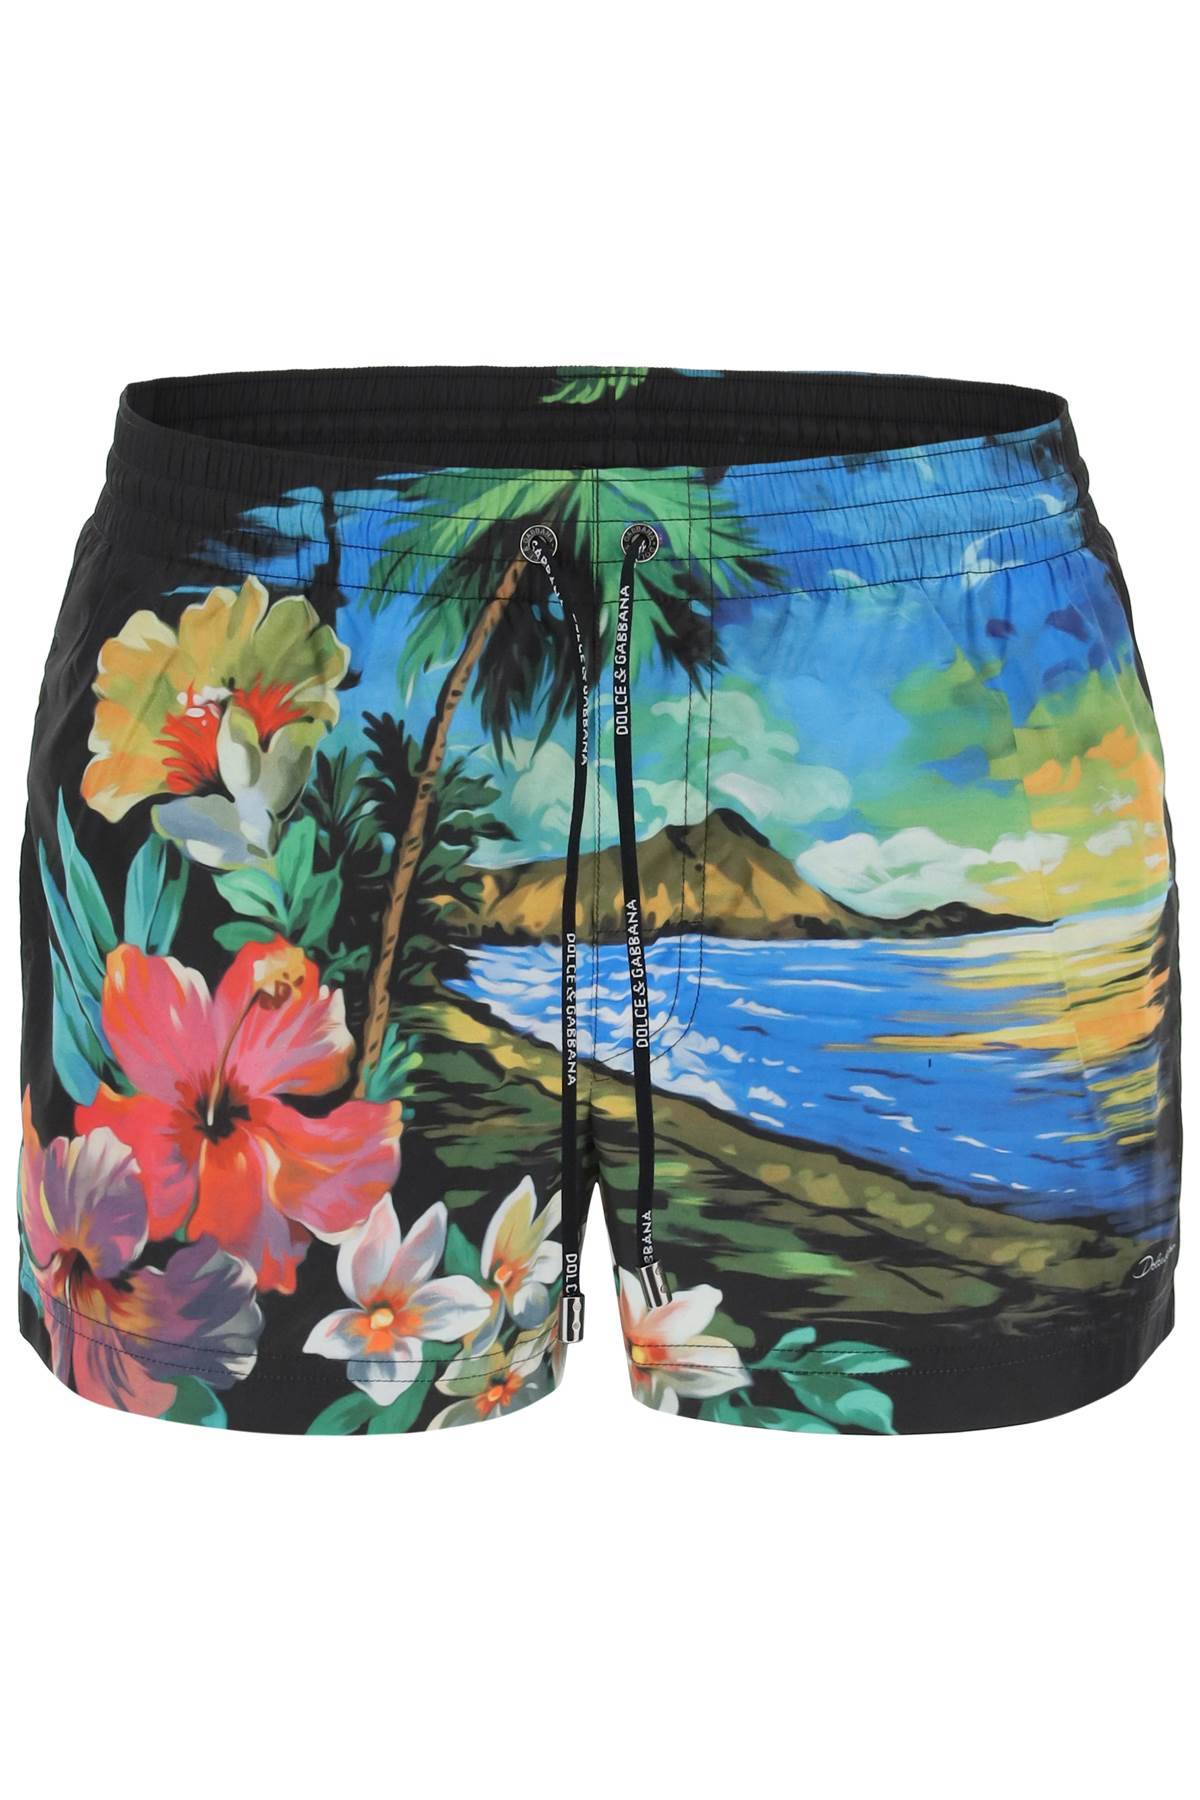 DOLCE & GABBANA hawaii print swim trunks